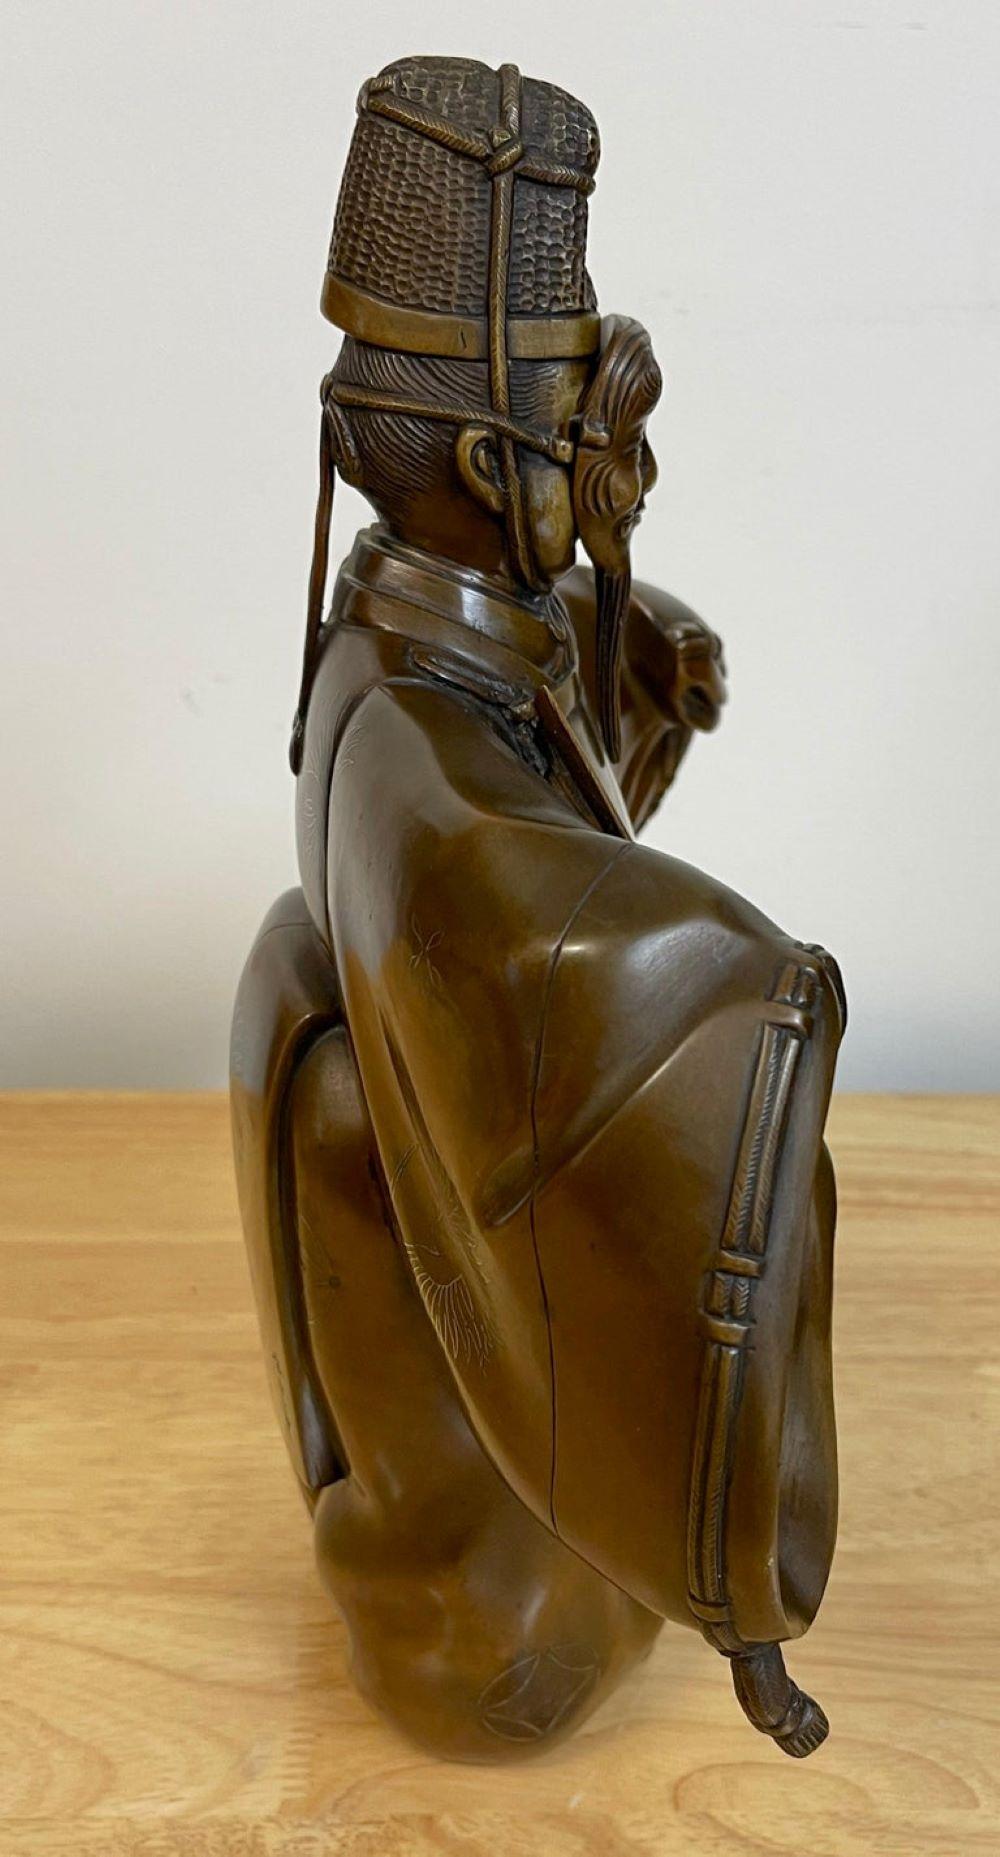 Bronzefigur einer Noh aus der Meiji-Periode mit Maske
Japan, um 1900

Eine fesselnde Bronzefigur aus der Meiji-Zeit, die einen Noh-Darsteller mit Maske darstellt und aus Japan um 1900 stammt. Mit einer Höhe von 13,5 Zentimetern, einer Breite von